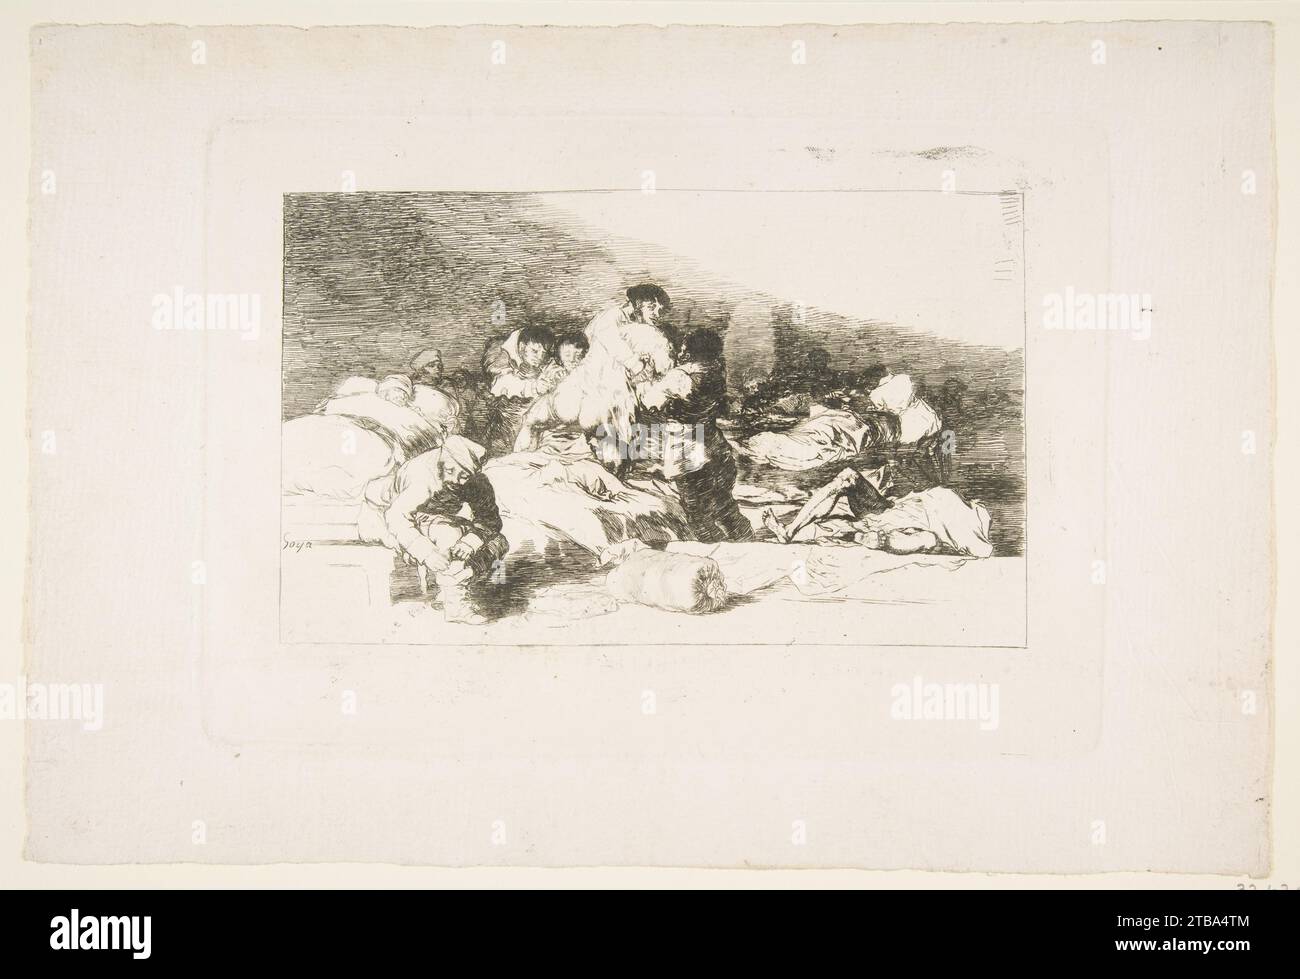 Plate 25 from 'The Disasters of War' (Los Desastres de la Guerra): 'These too' (Tambien estos) 1932 by Goya (Francisco de Goya y Lucientes) Stock Photo